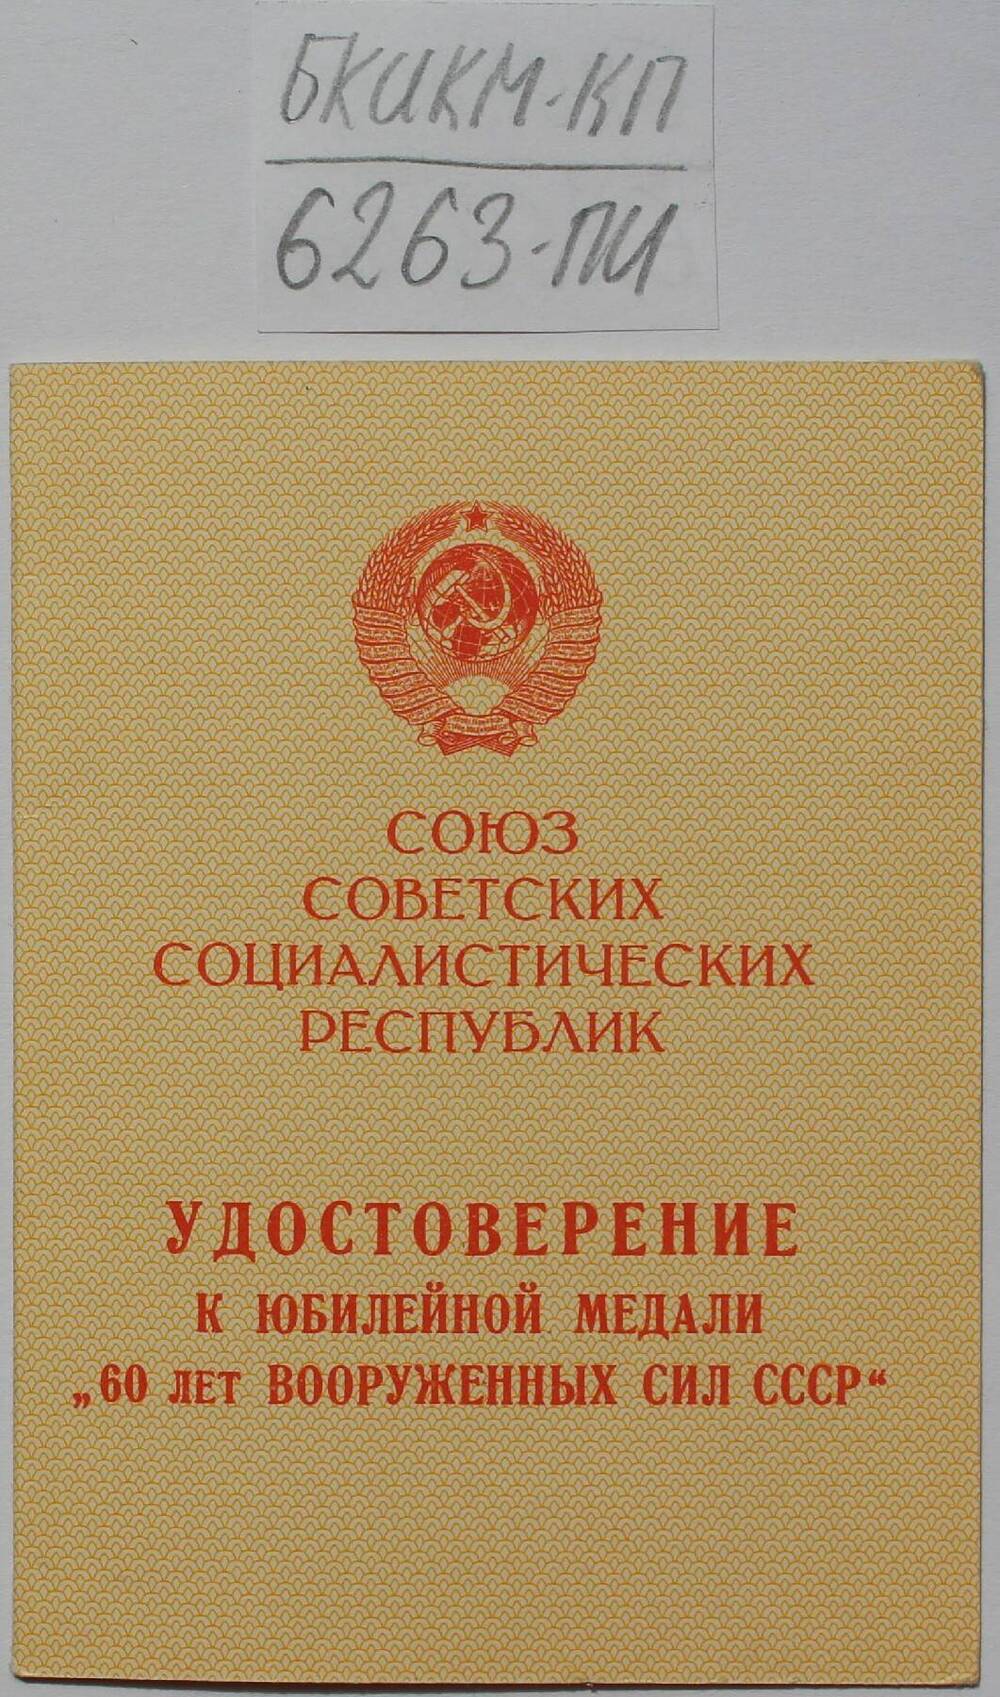 Удостоверение к юбилейной медали 60 лет ВС СССР.